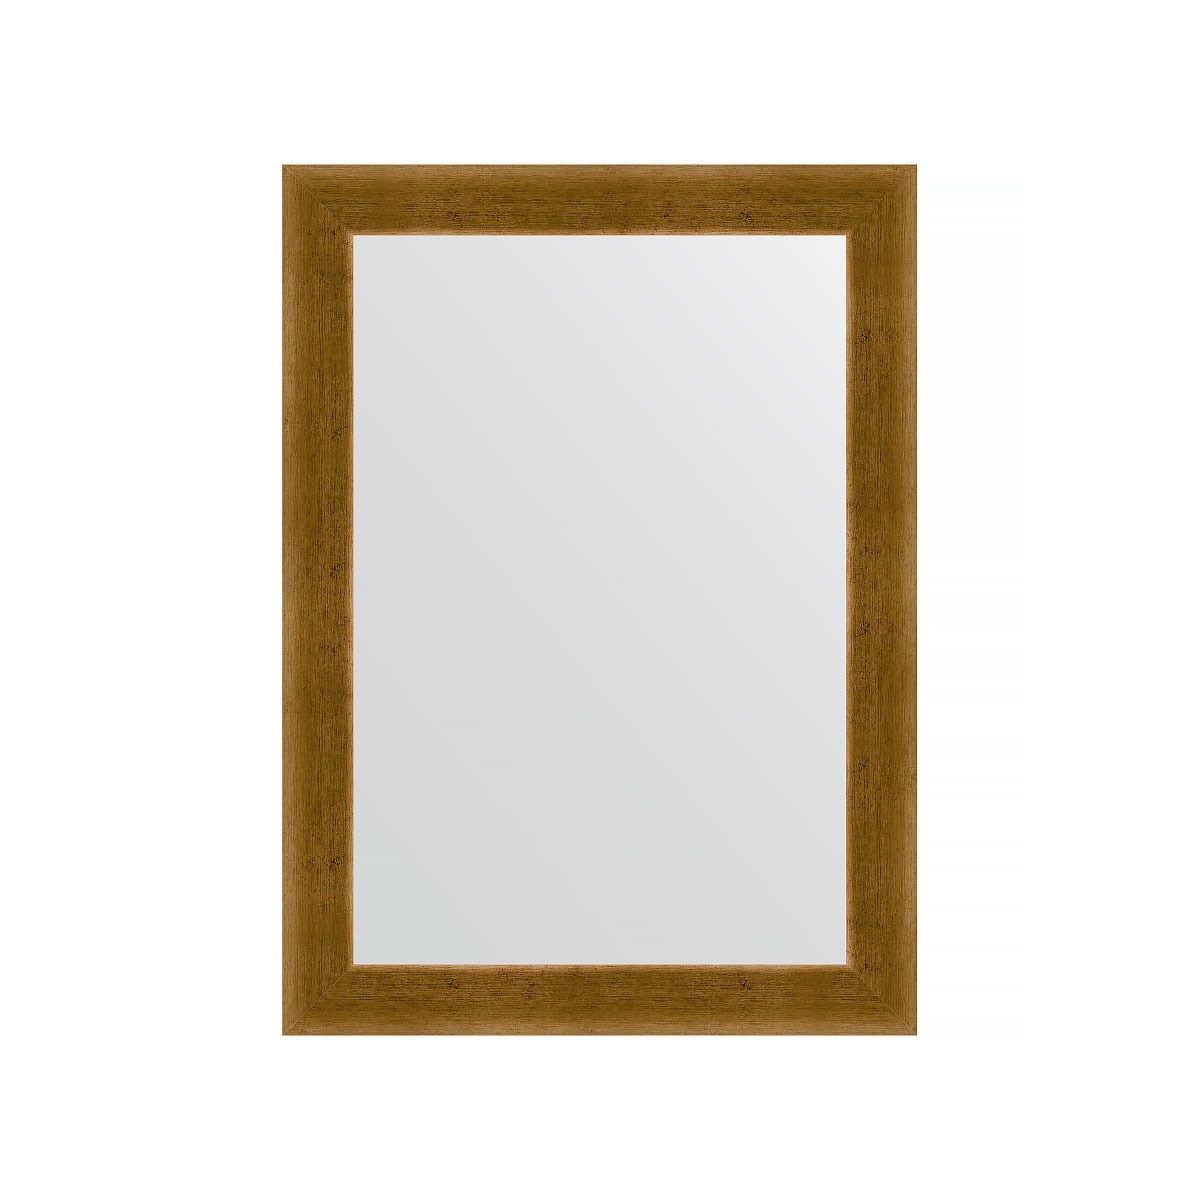 Зеркало в багетной раме Evoform травленое золото 59 мм 54х74 см зеркало элегант 60 110 см в раме из зеркальной мозаики для ванной